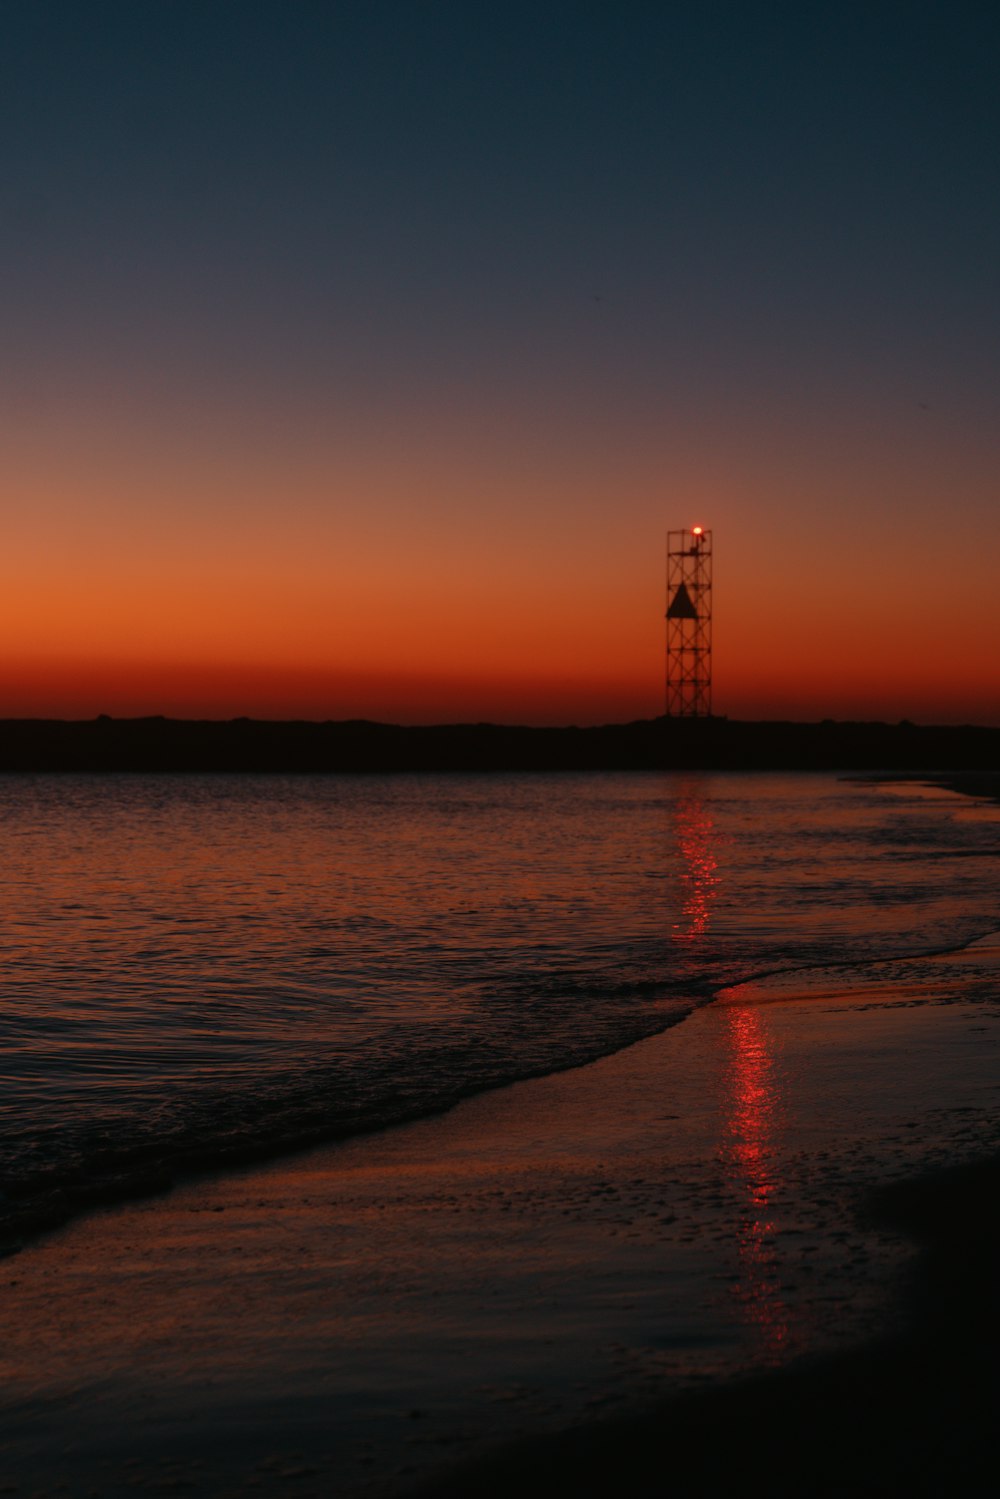 El sol se está poniendo sobre el océano con una torre de luz en la distancia